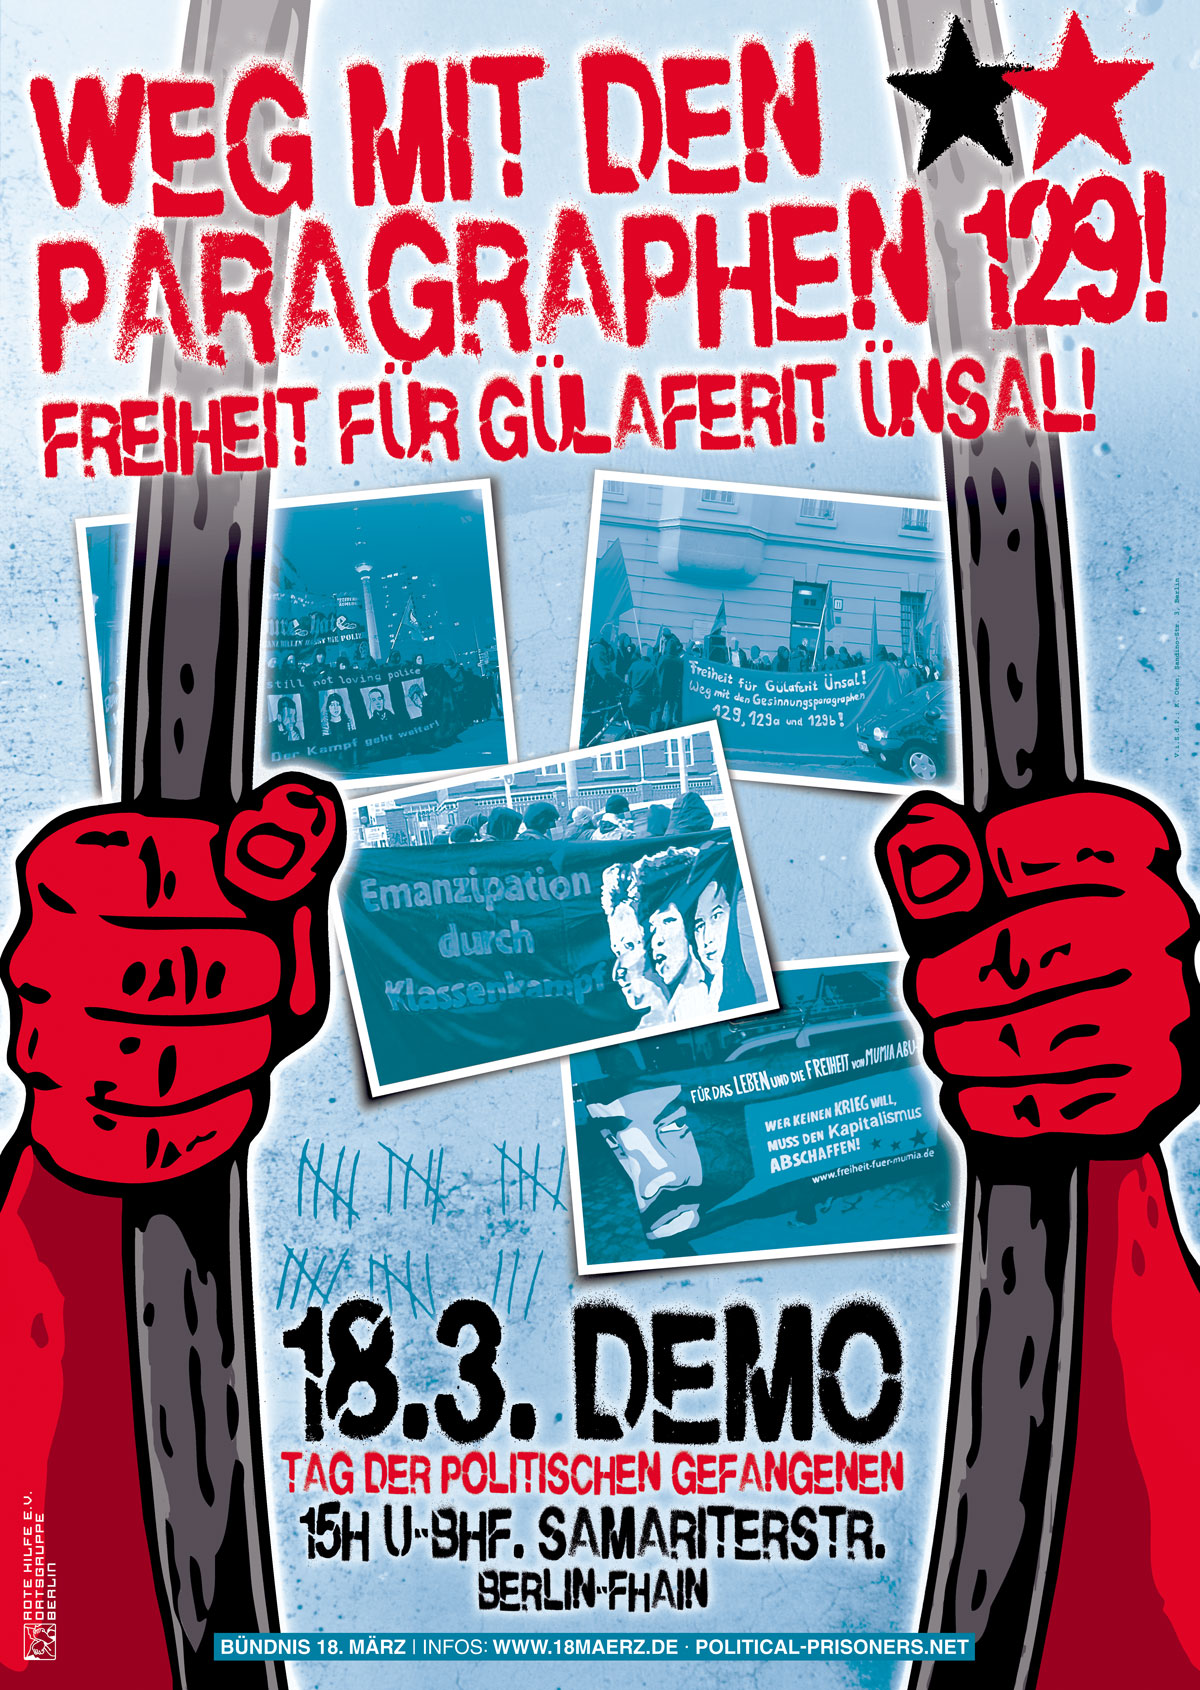 Berlin: 18.3.-Demo und Aufruf